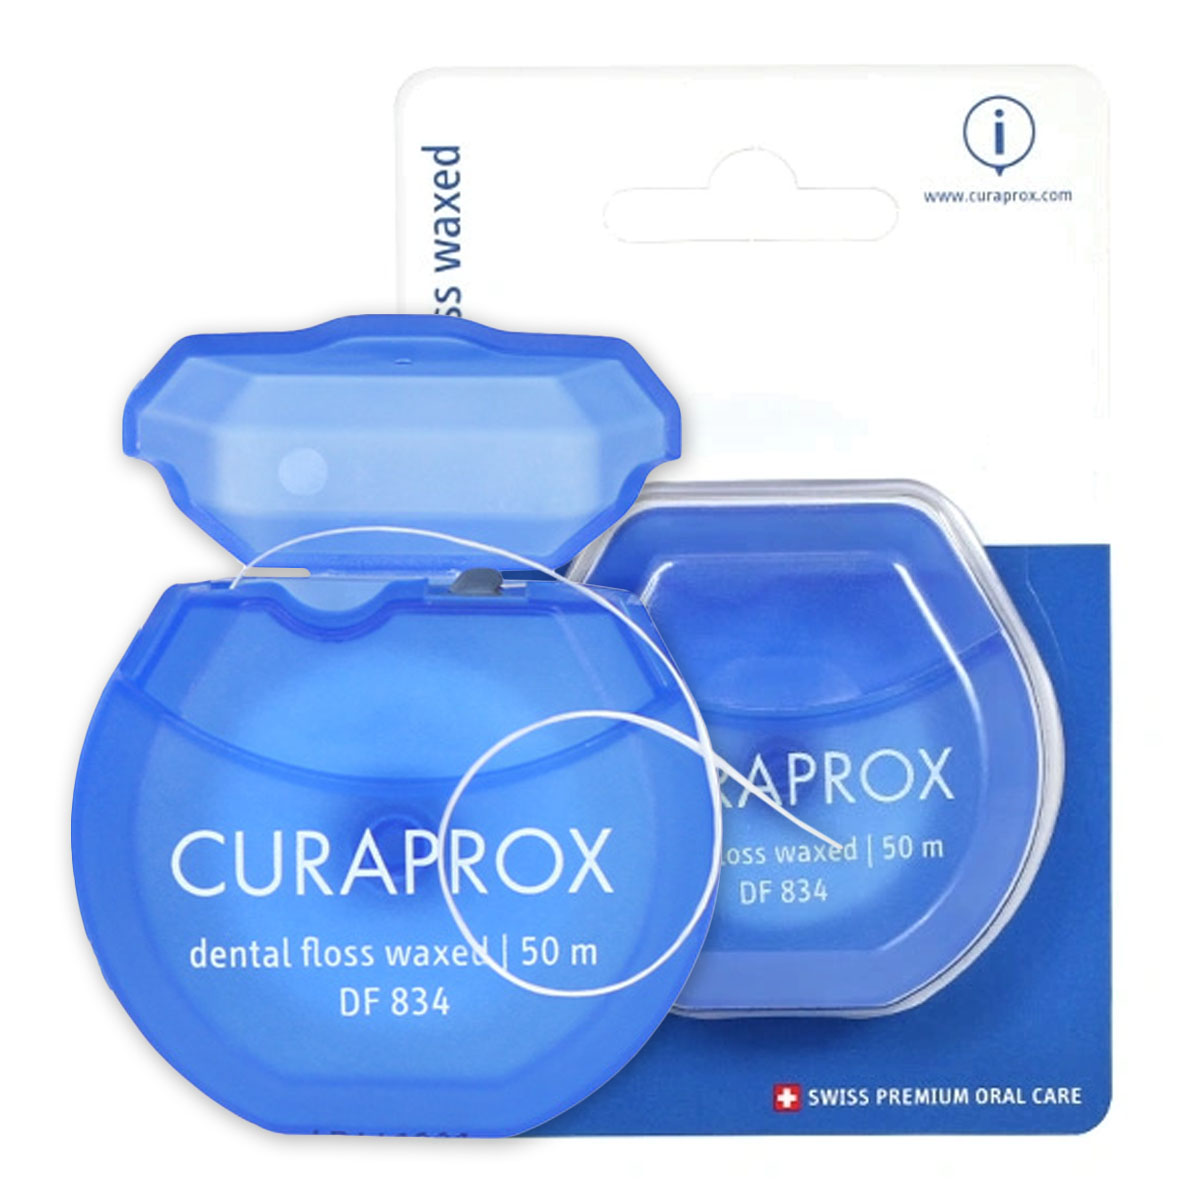 Зубная нить Curaprox нить межзубная тефлоновая с хлоргексидином curaprox курапрокс 35м